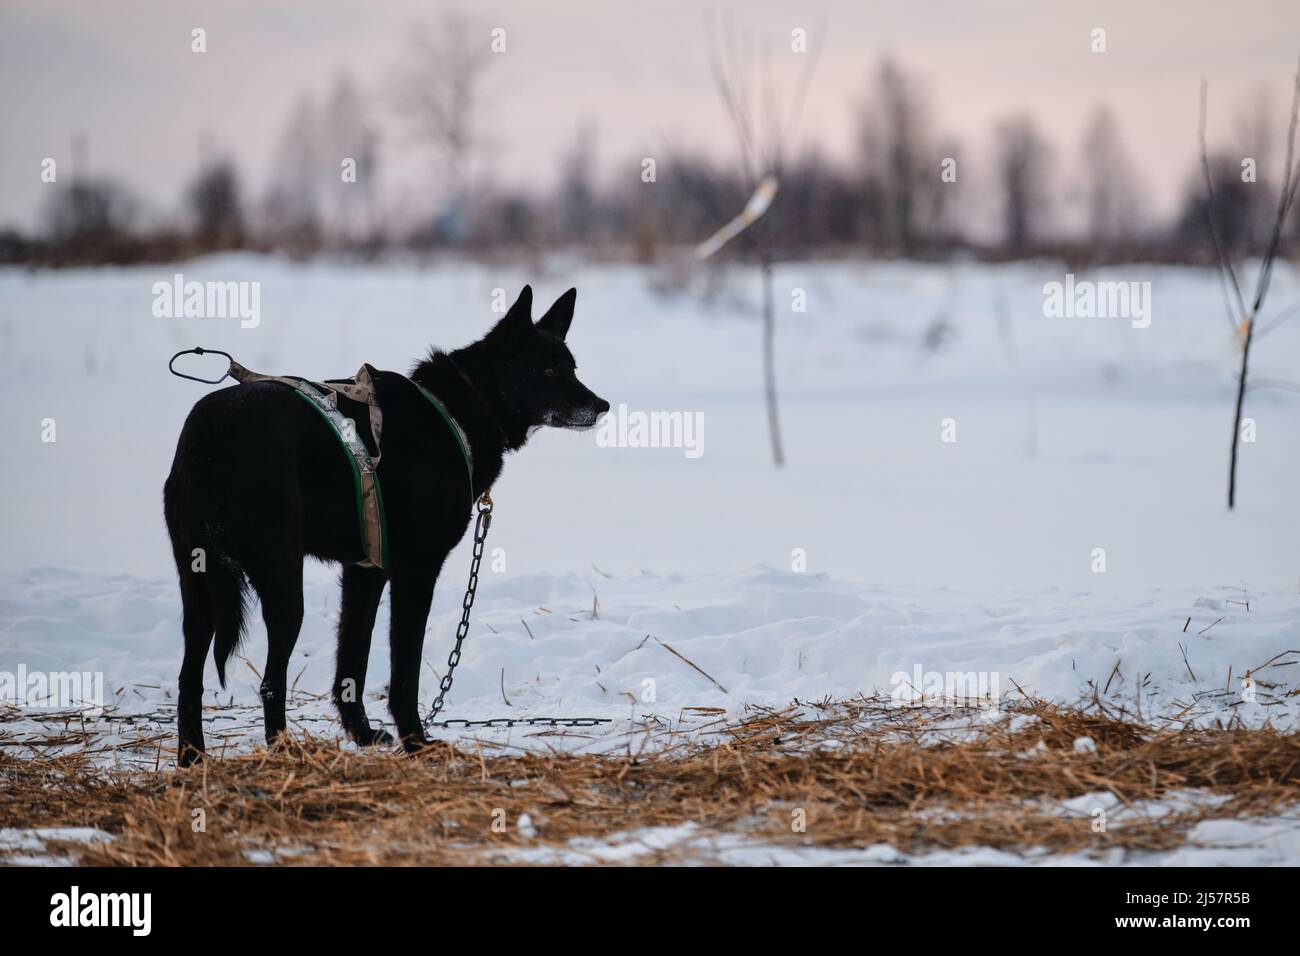 Schwarzer Hund mit grauer Schnauze in x-förmigem Geschirr steht mit Rücken und schaut weg. Die Nördliche Schlittenhunderasse Alaskan Husky ist zum Steak in s verkettet Stockfoto